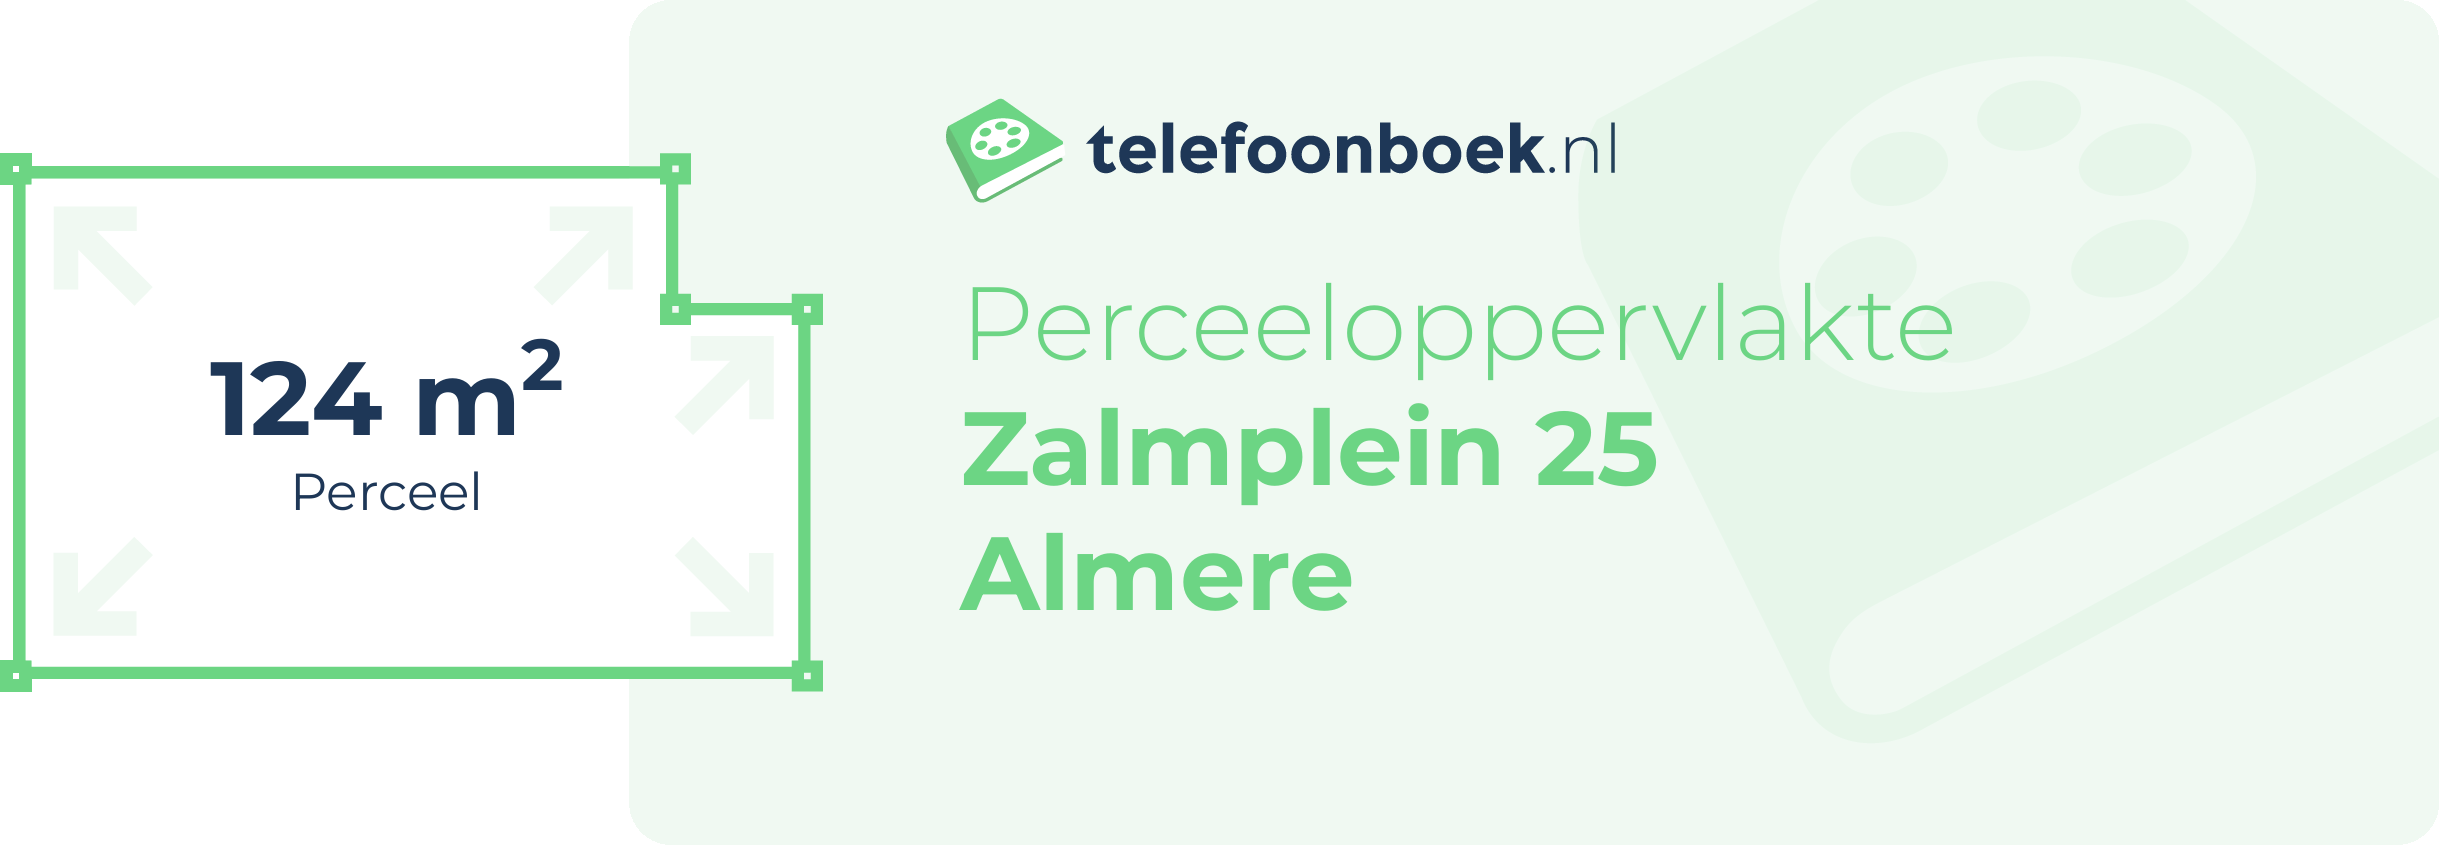 Perceeloppervlakte Zalmplein 25 Almere